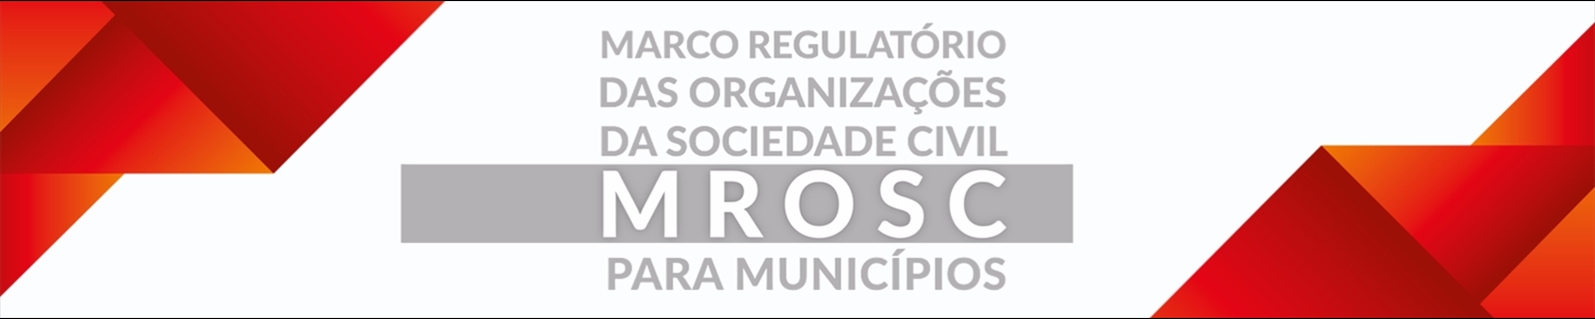 MROSC para municípios